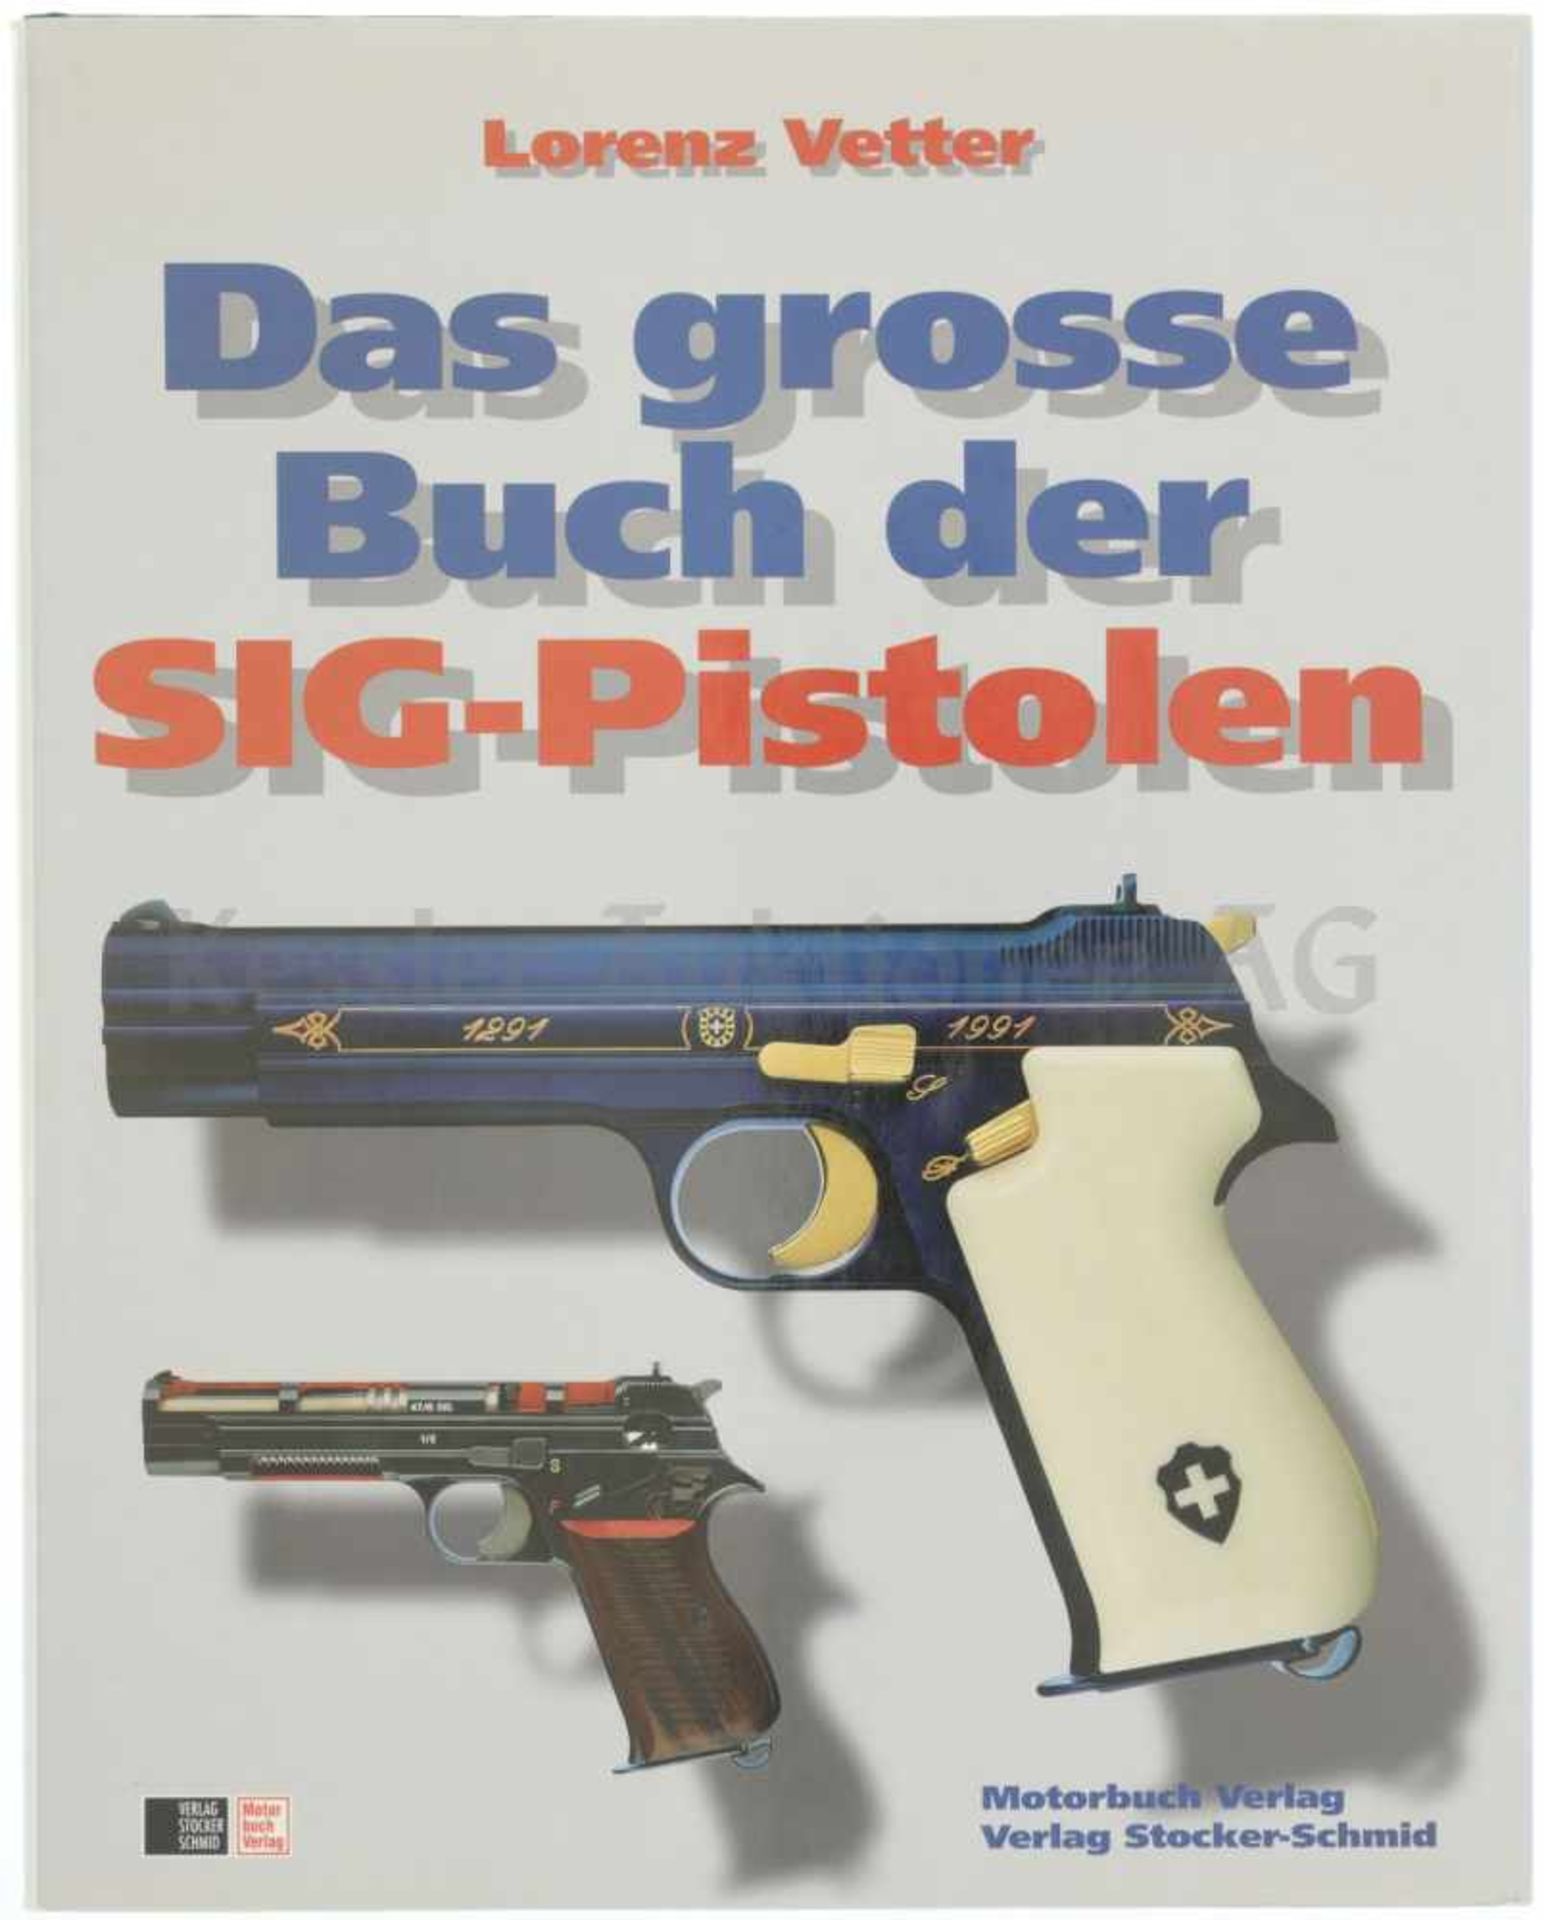 Das grosse Buch der SIG-Pistolen Lorenz Vetter, Stocker-Schmid-Verlag 1995. Längst vergriffenes